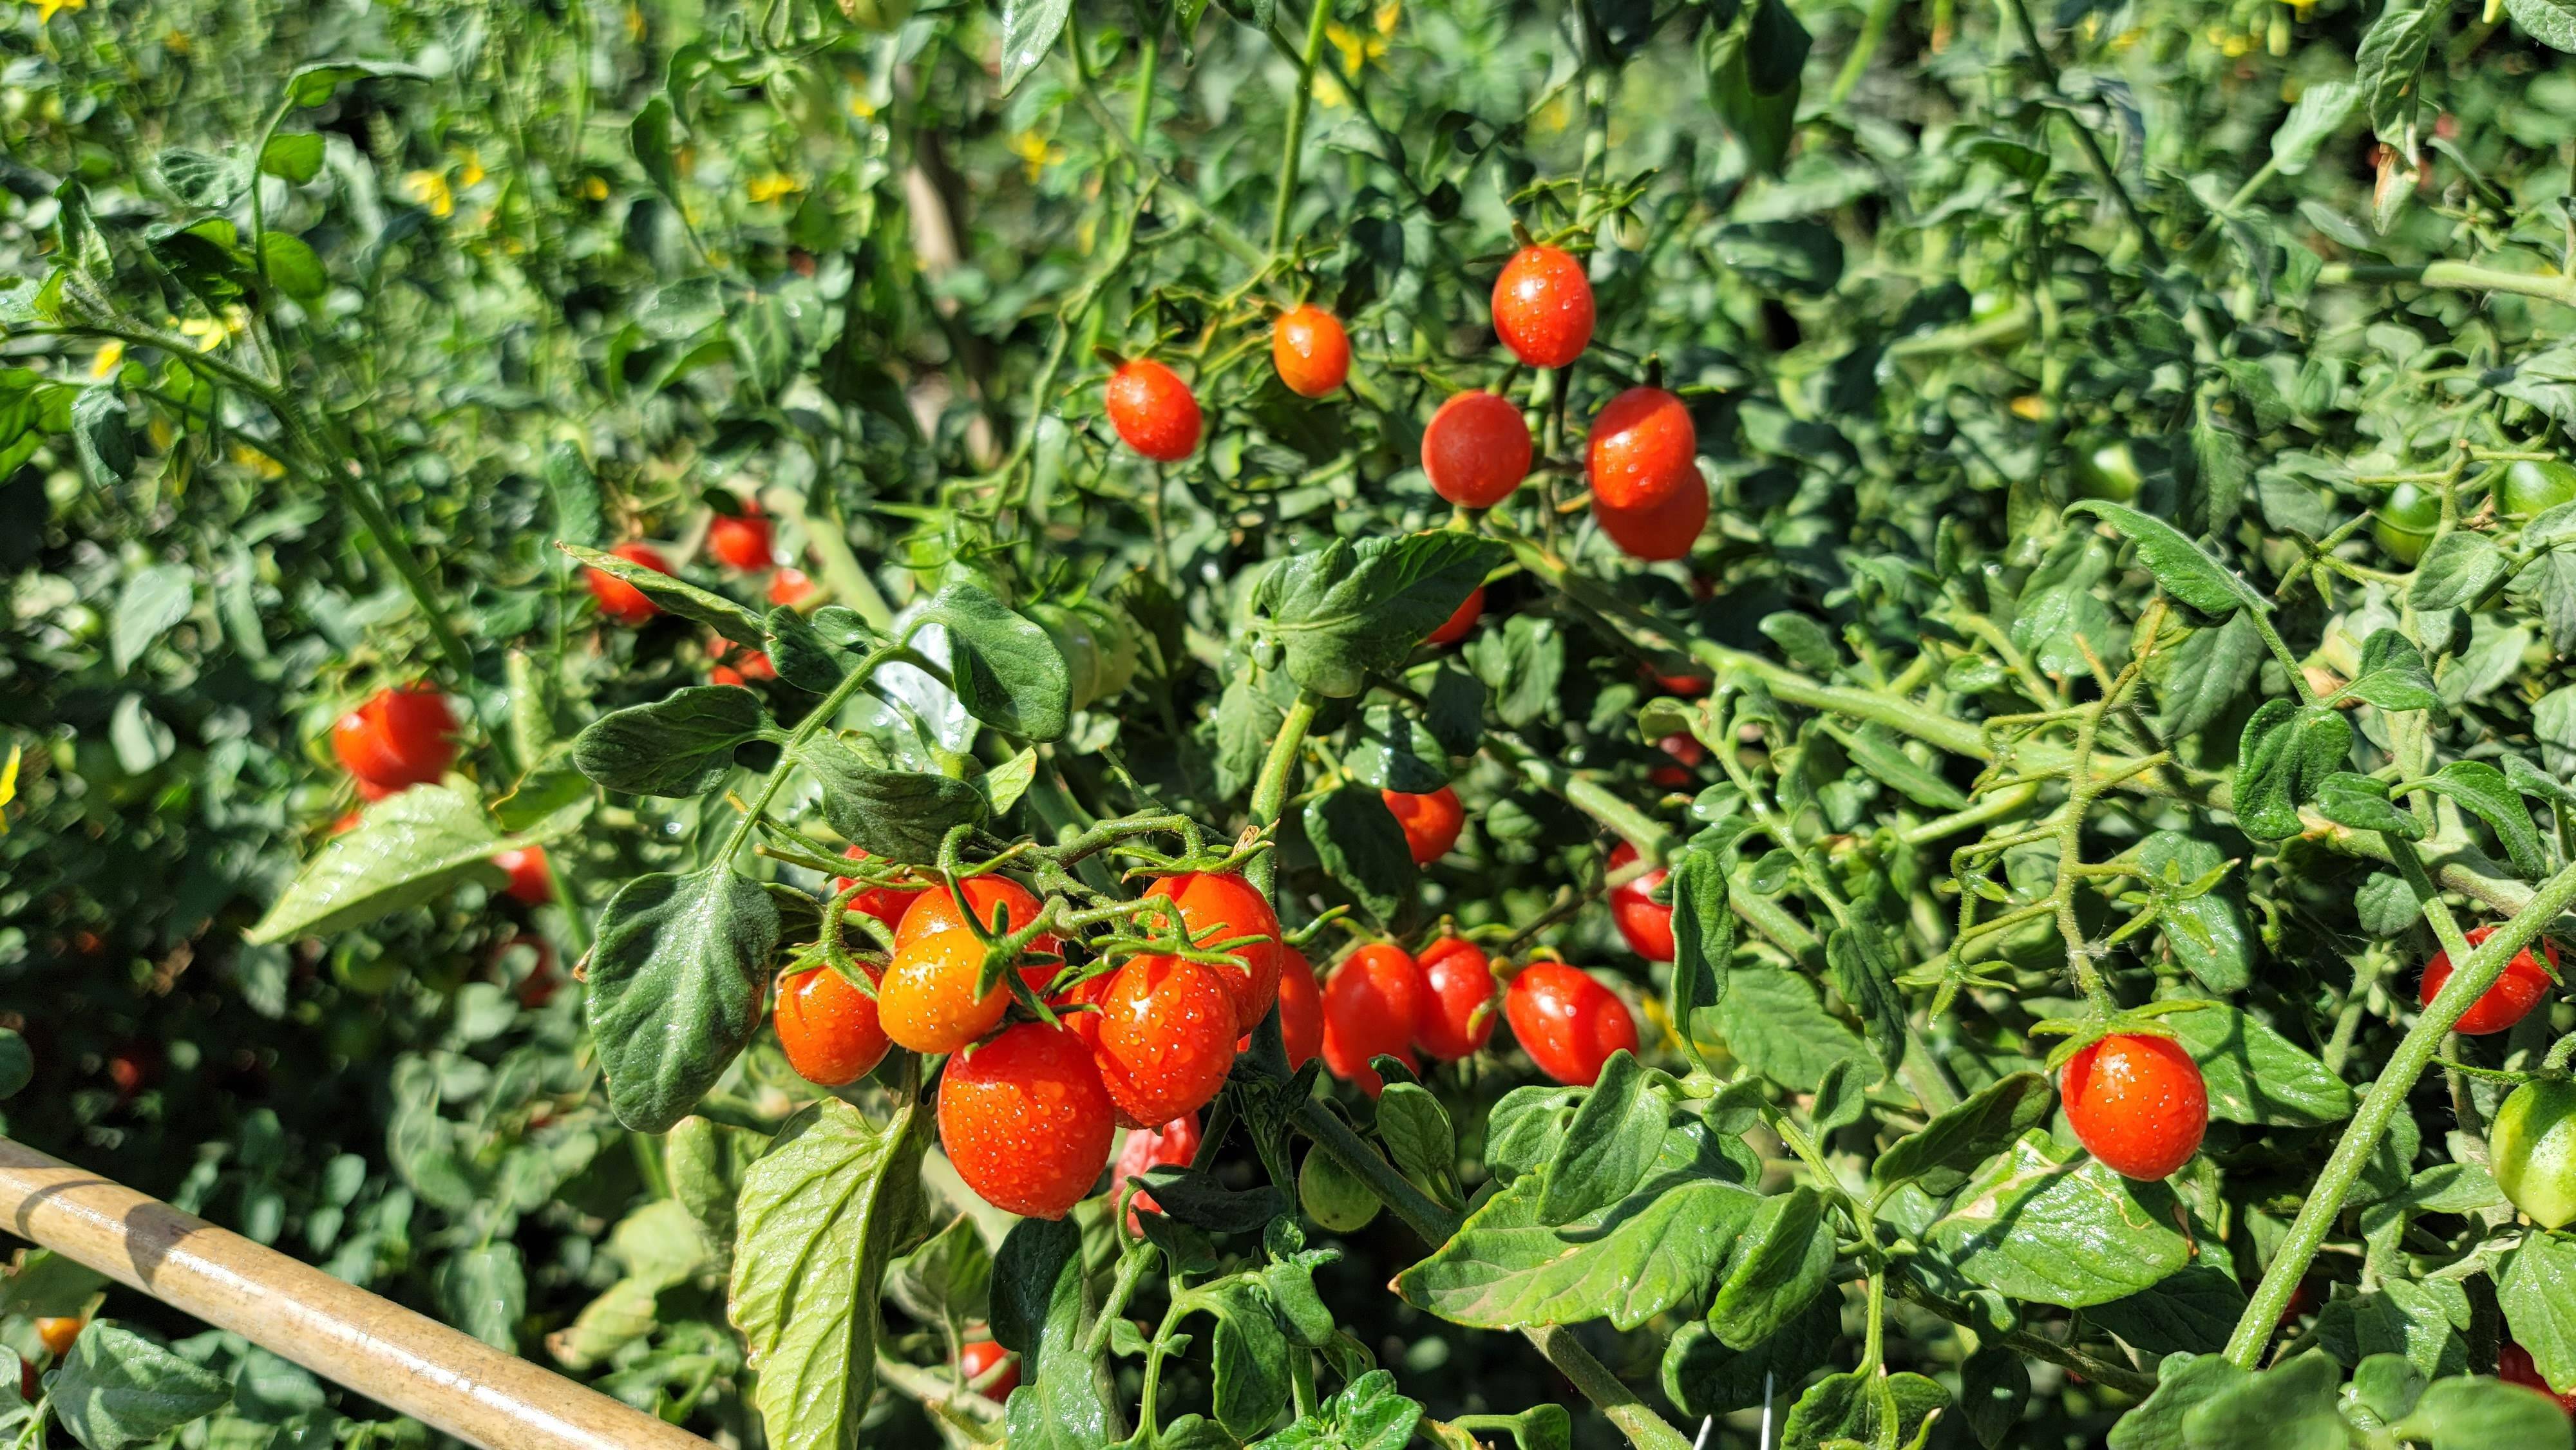 这段时间,库尔勒市阿瓦提乡小兰干村的一片圣女果种植基地迎来丰产